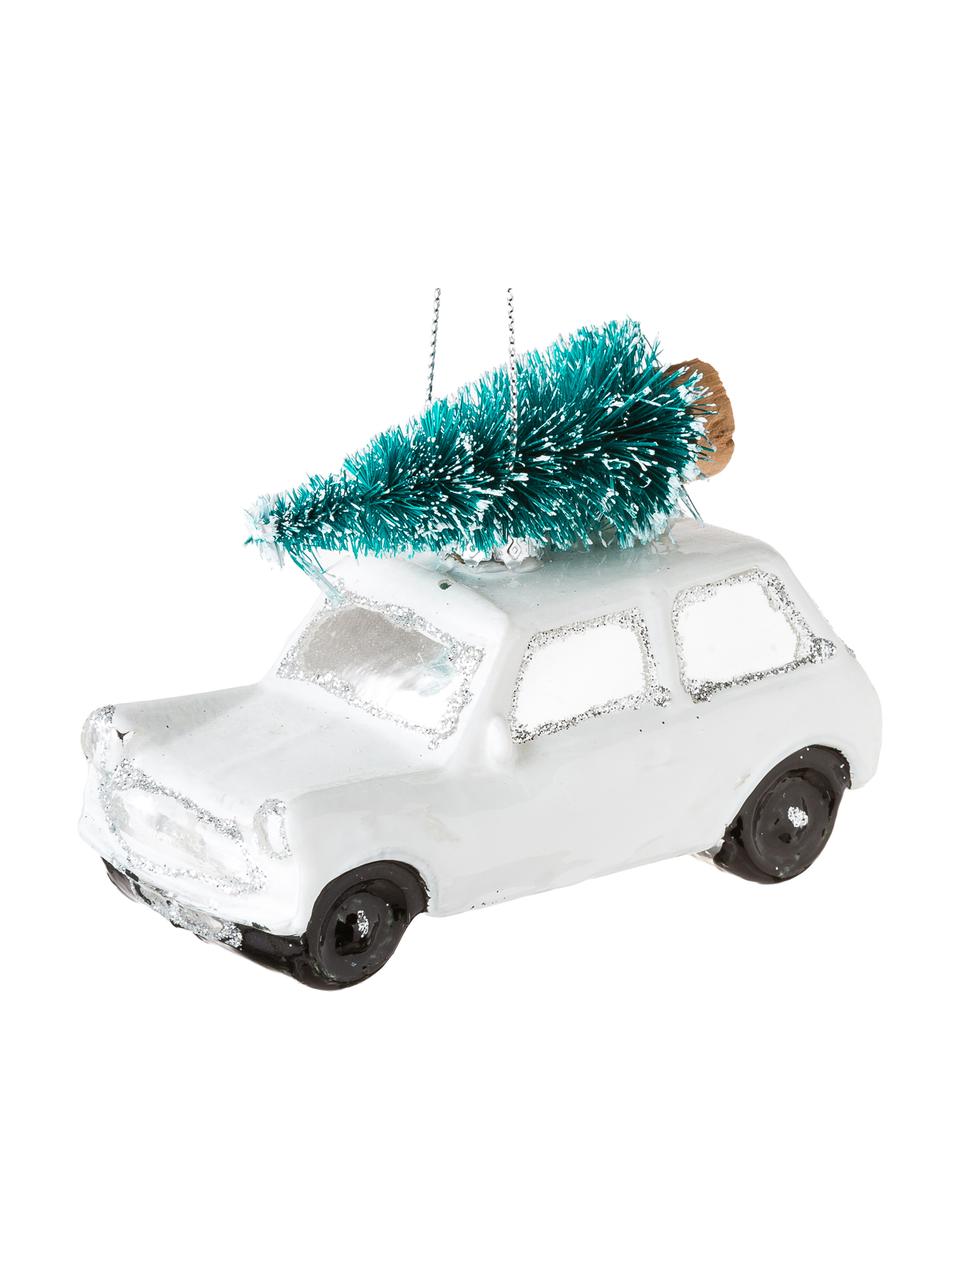 Ensemble de décorations de sapin de Noël Christmas Cars, 2 élém., Blanc, couleur argentée